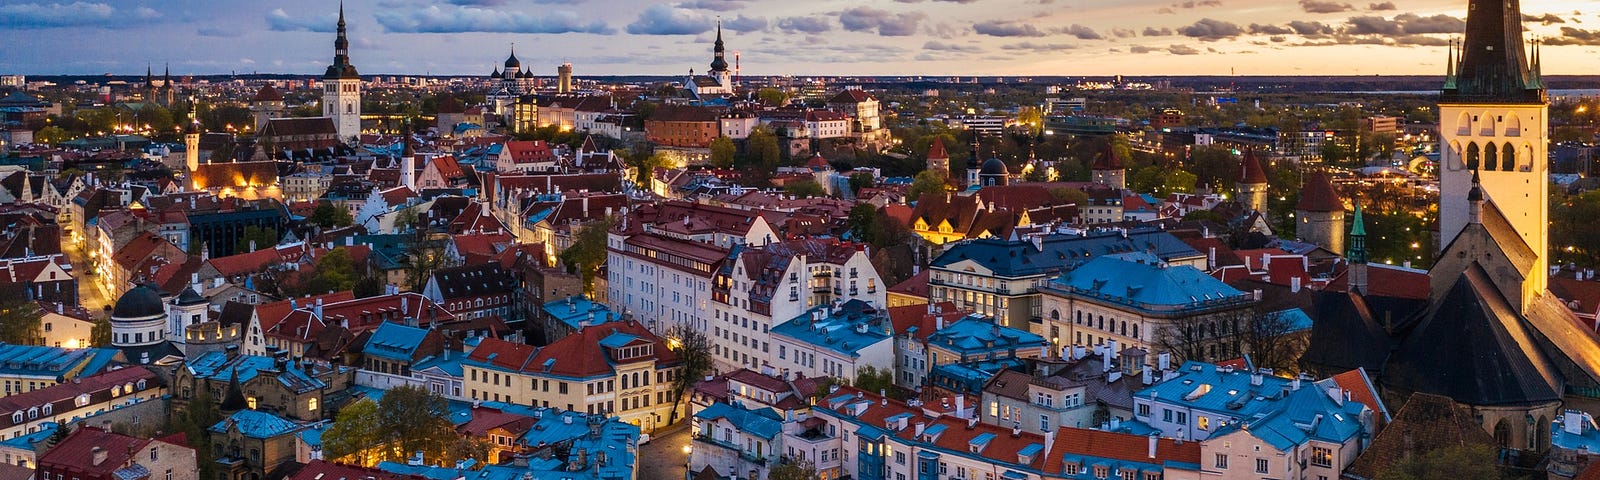 Tallinn vista do alto, com seus prédios, casas e natureza.